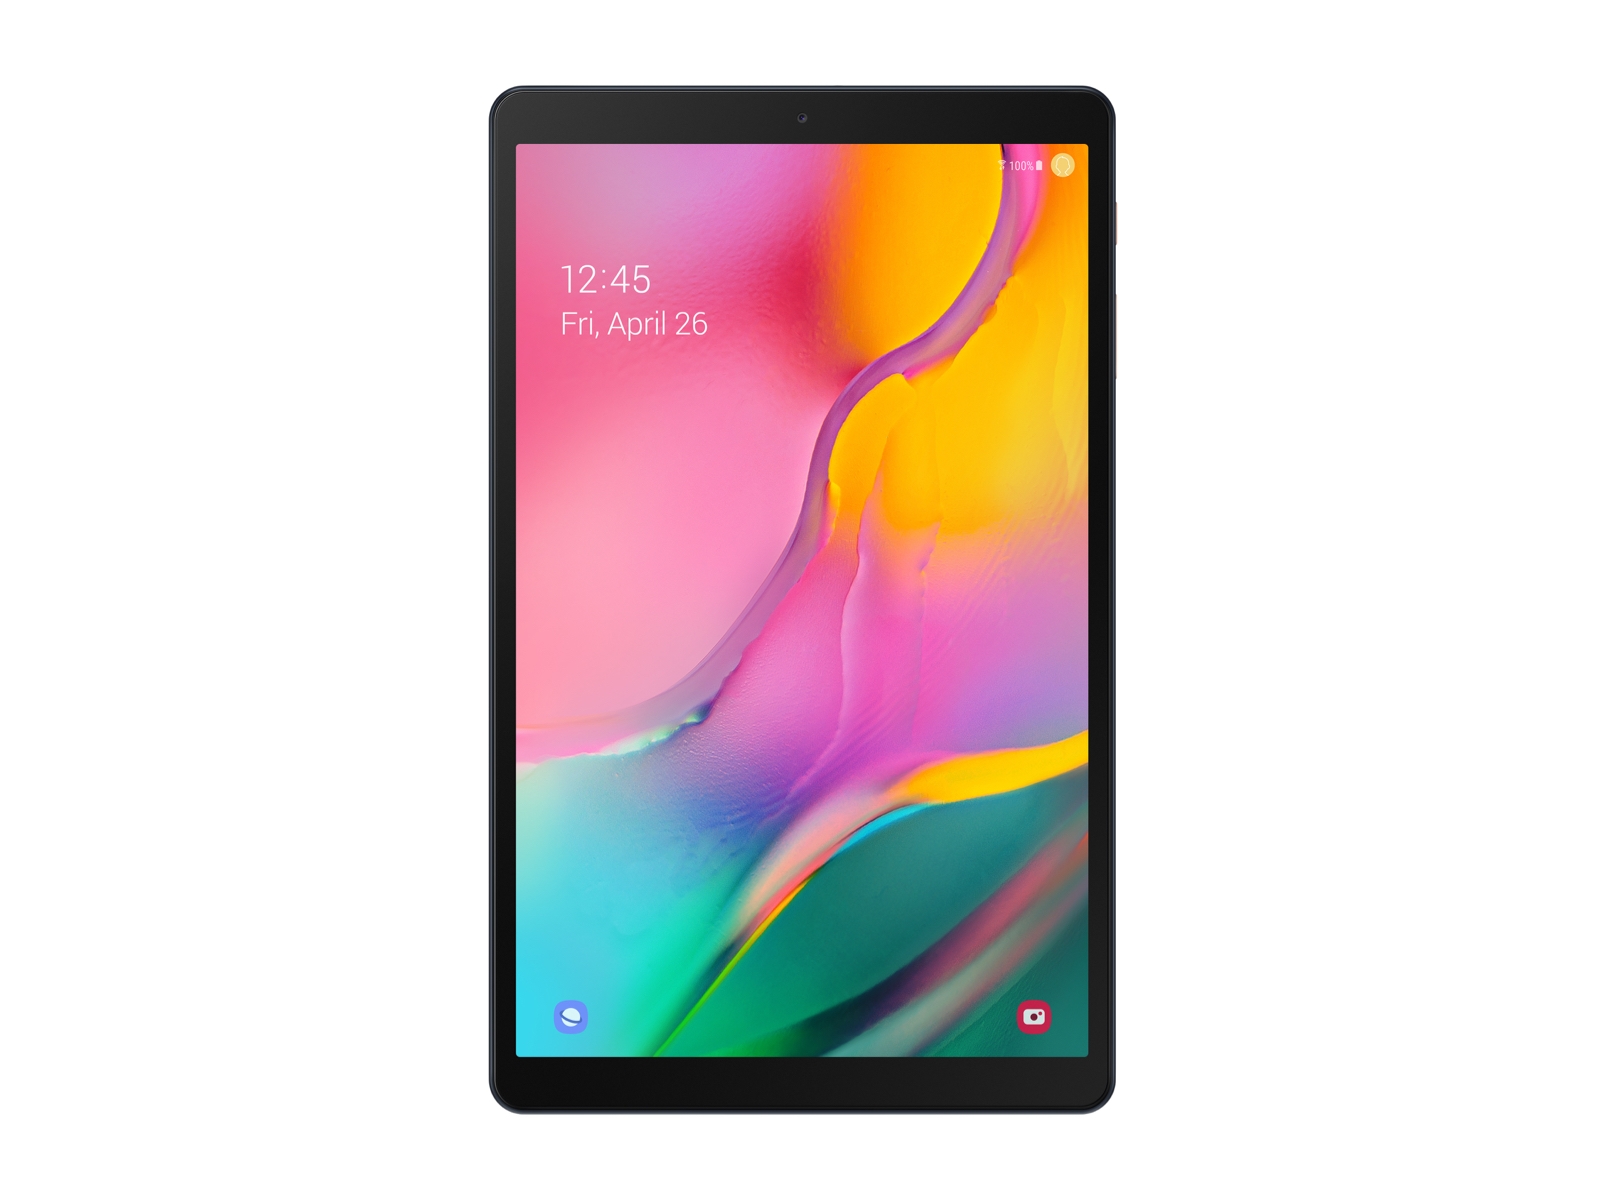 Galaxy Tab A 10.1 2019 128GB Gold Wi Fi Tablets - SM-T510NZDGXAR